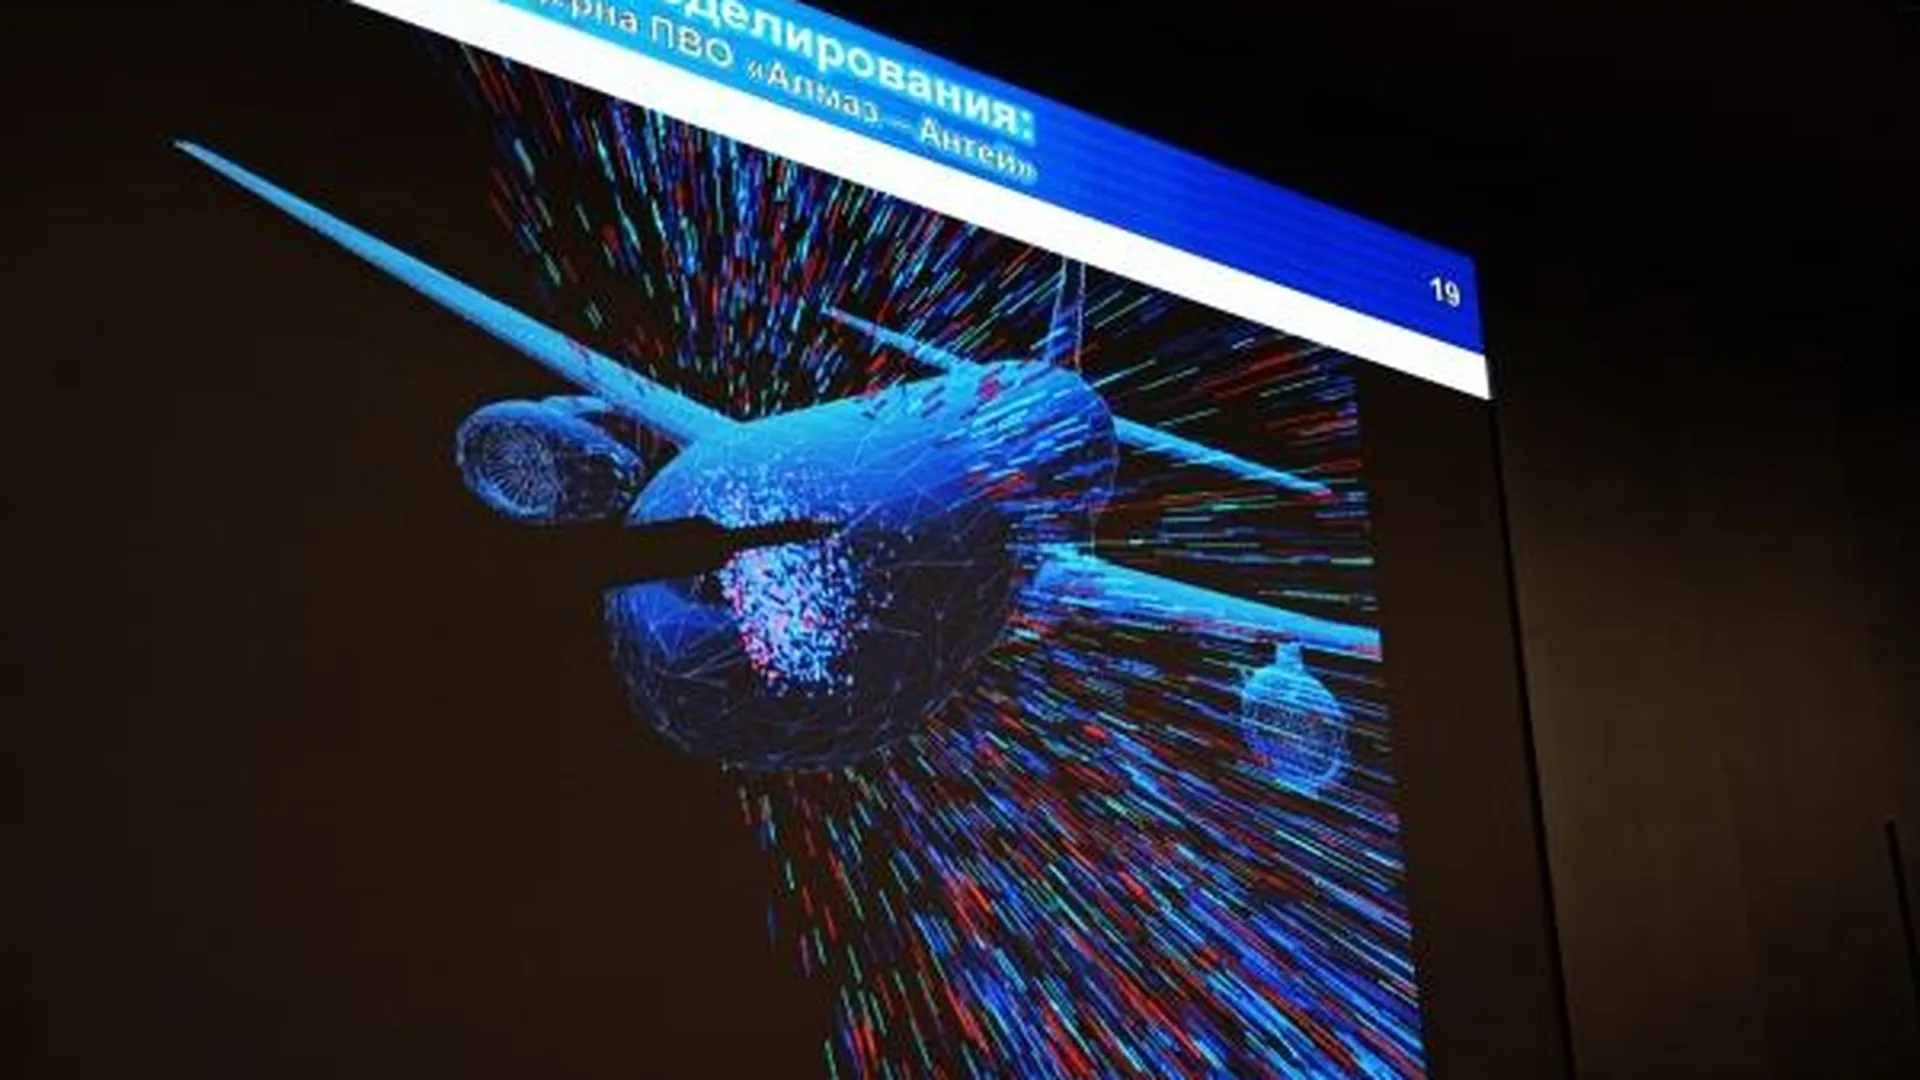 Фрагмент презентации на пресс-конференции в Москве, где были представлены результаты моделирования катастрофы малайзийского Boeing в Донбассе